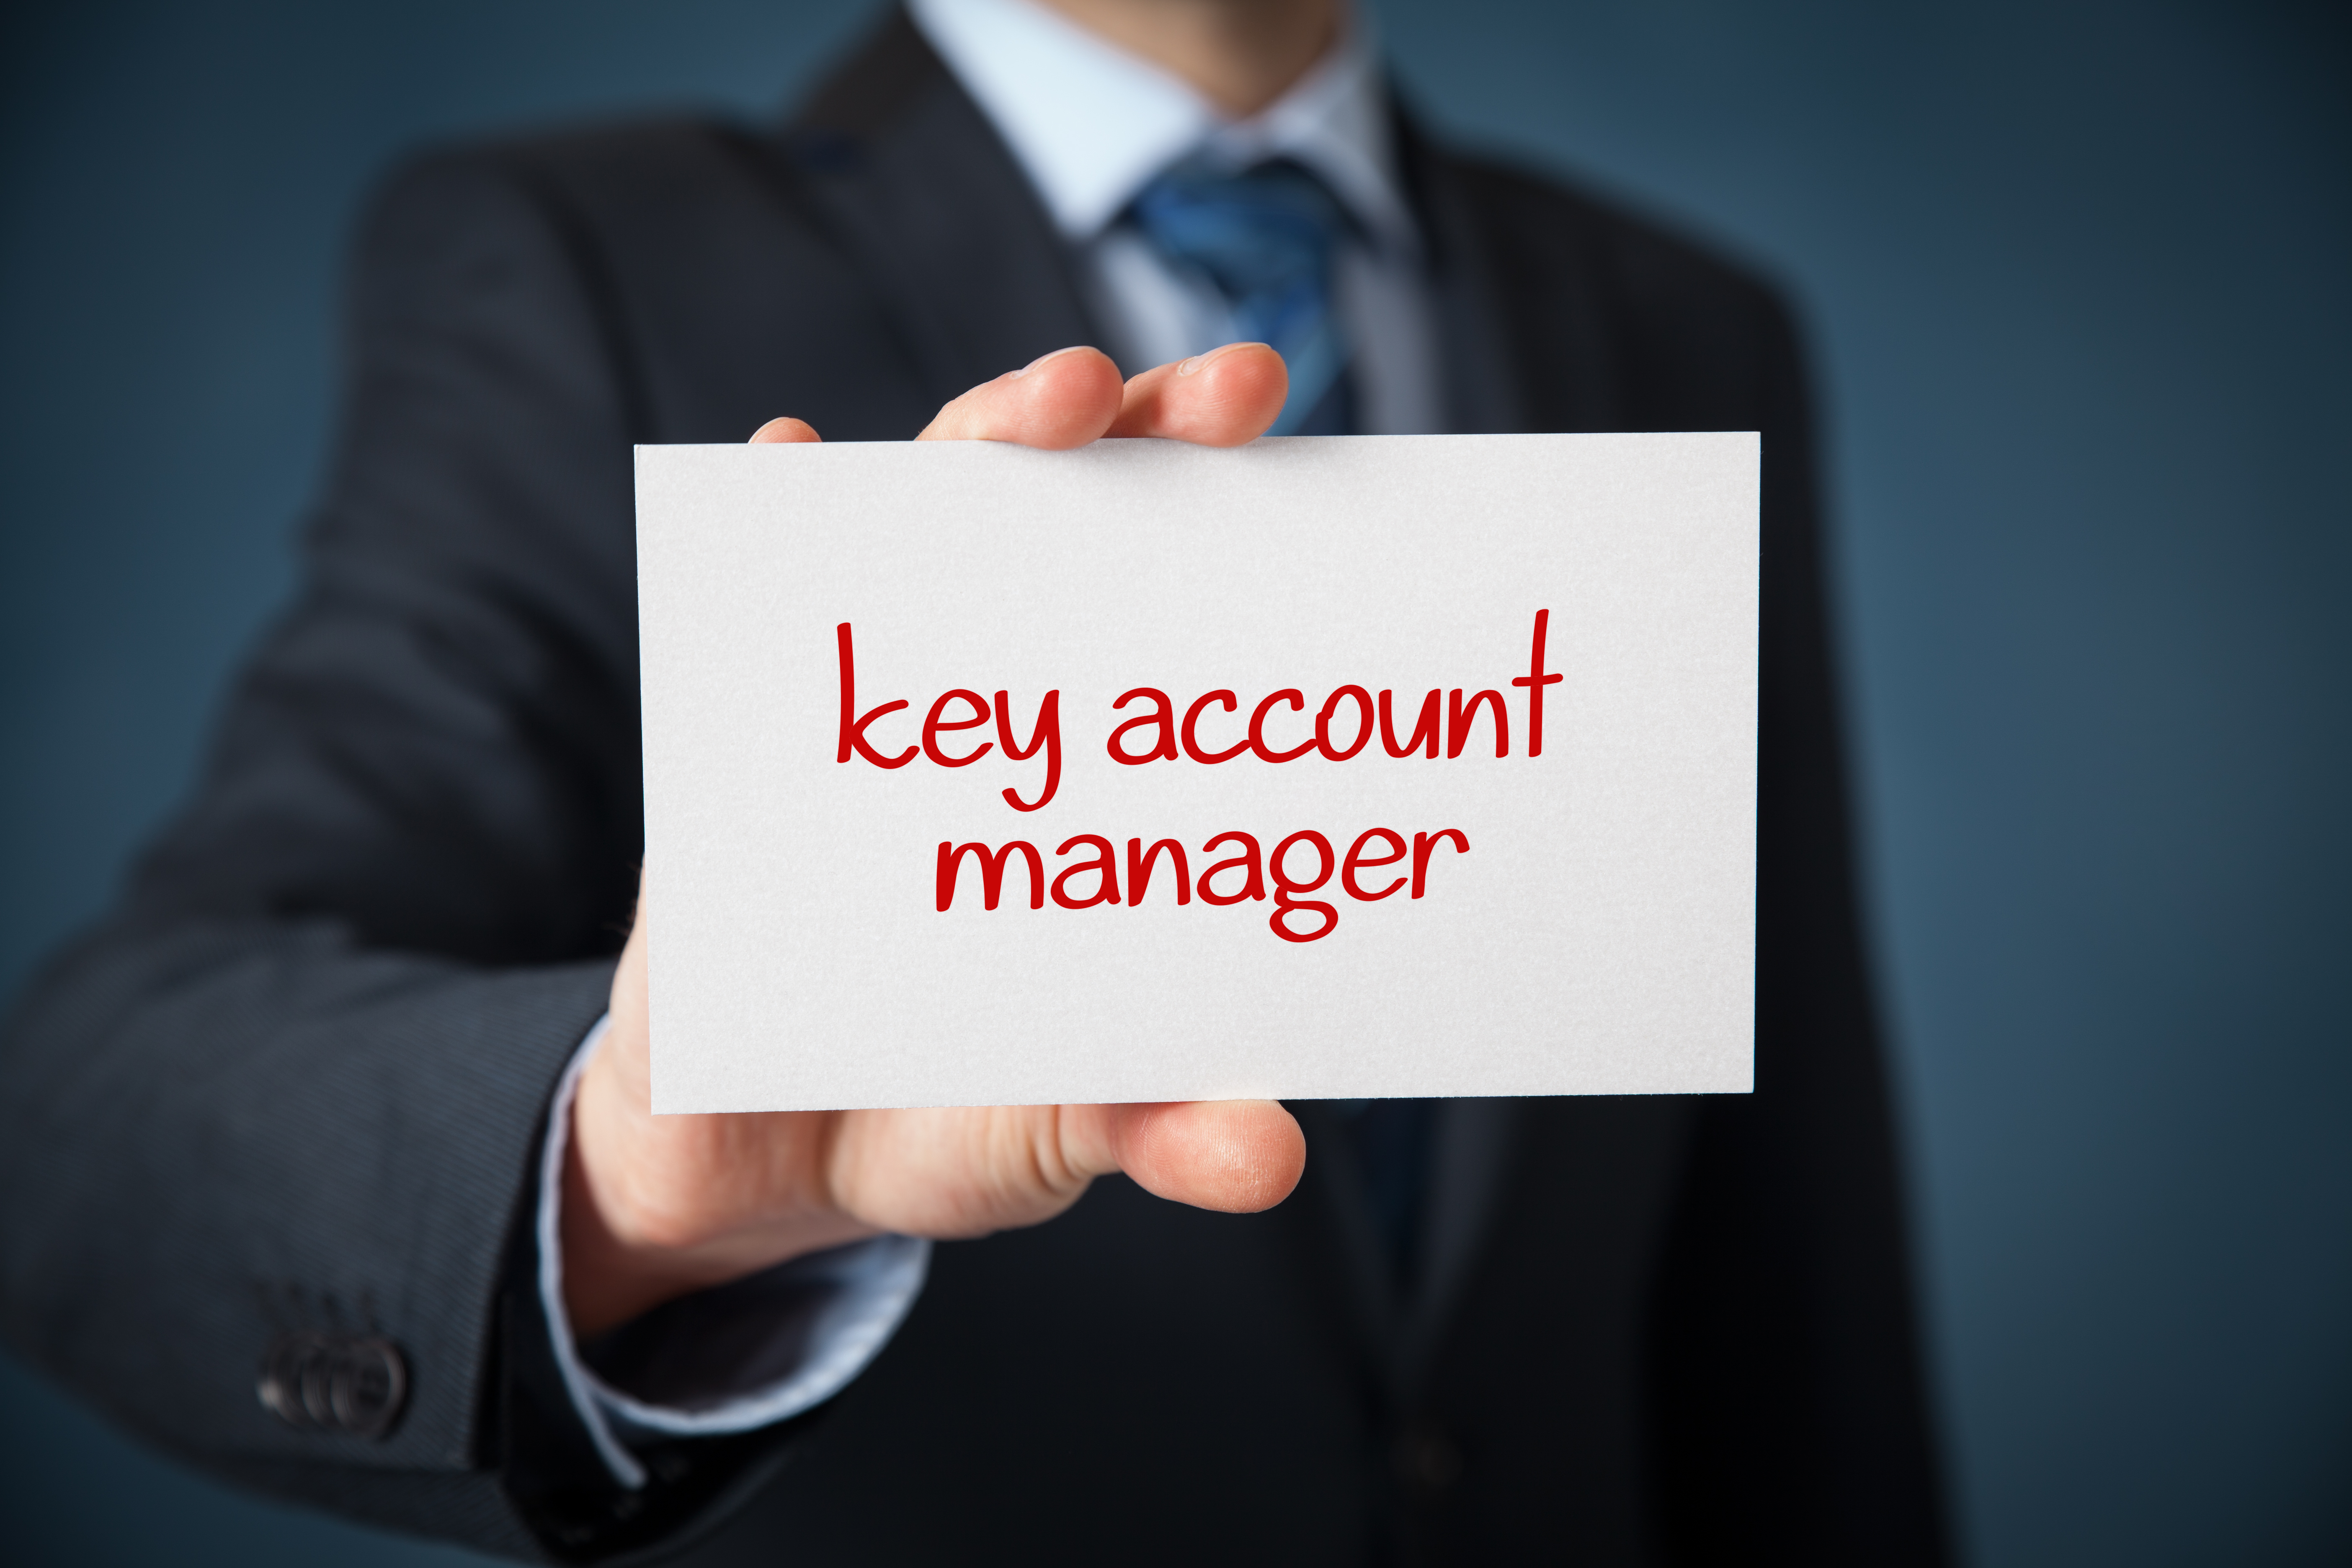 Chân dung ứng viên Key Account Manager được nhà tuyển dụng săn đón